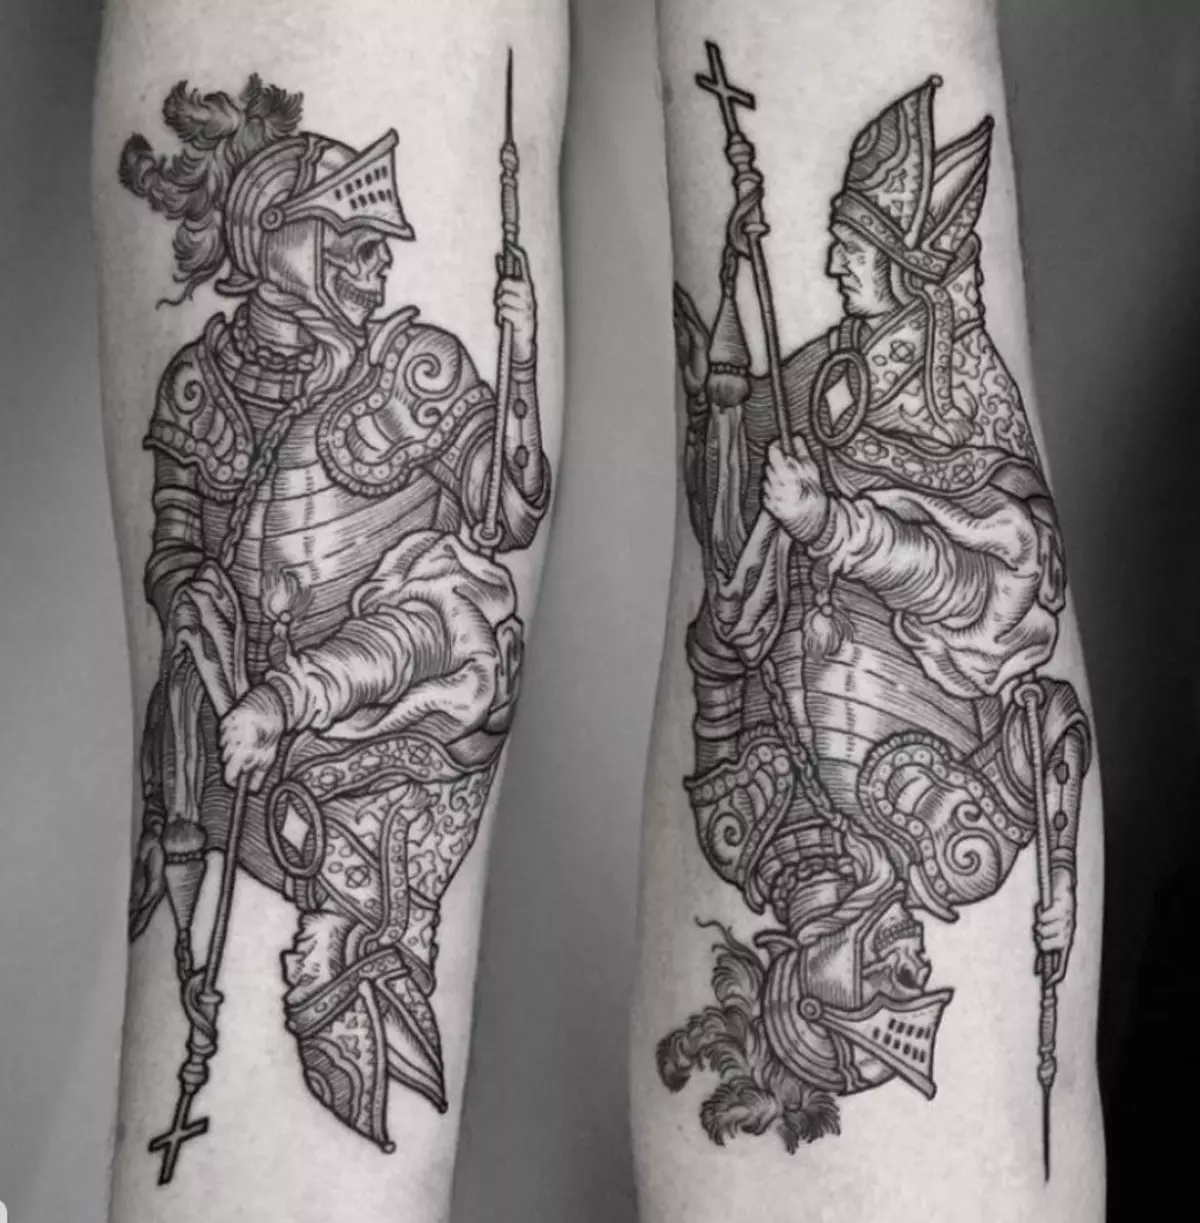 Tattoo ຢູ່ດ້ານຫນ້າ (93 ຮູບ): sketches ຂອງ tattoos ຢູ່ໃນມືຈາກແປງຈາກແປງໄປຫາແຂນສອກ. tattoo ພຽງເລັກນ້ອຍແລະໃຫຍ່ຢູ່ດ້ານນອກຂອງ forearm ແລະພາຍໃນ, ແນວຄວາມຄິດທີ່ສວຍງາມ 13976_76